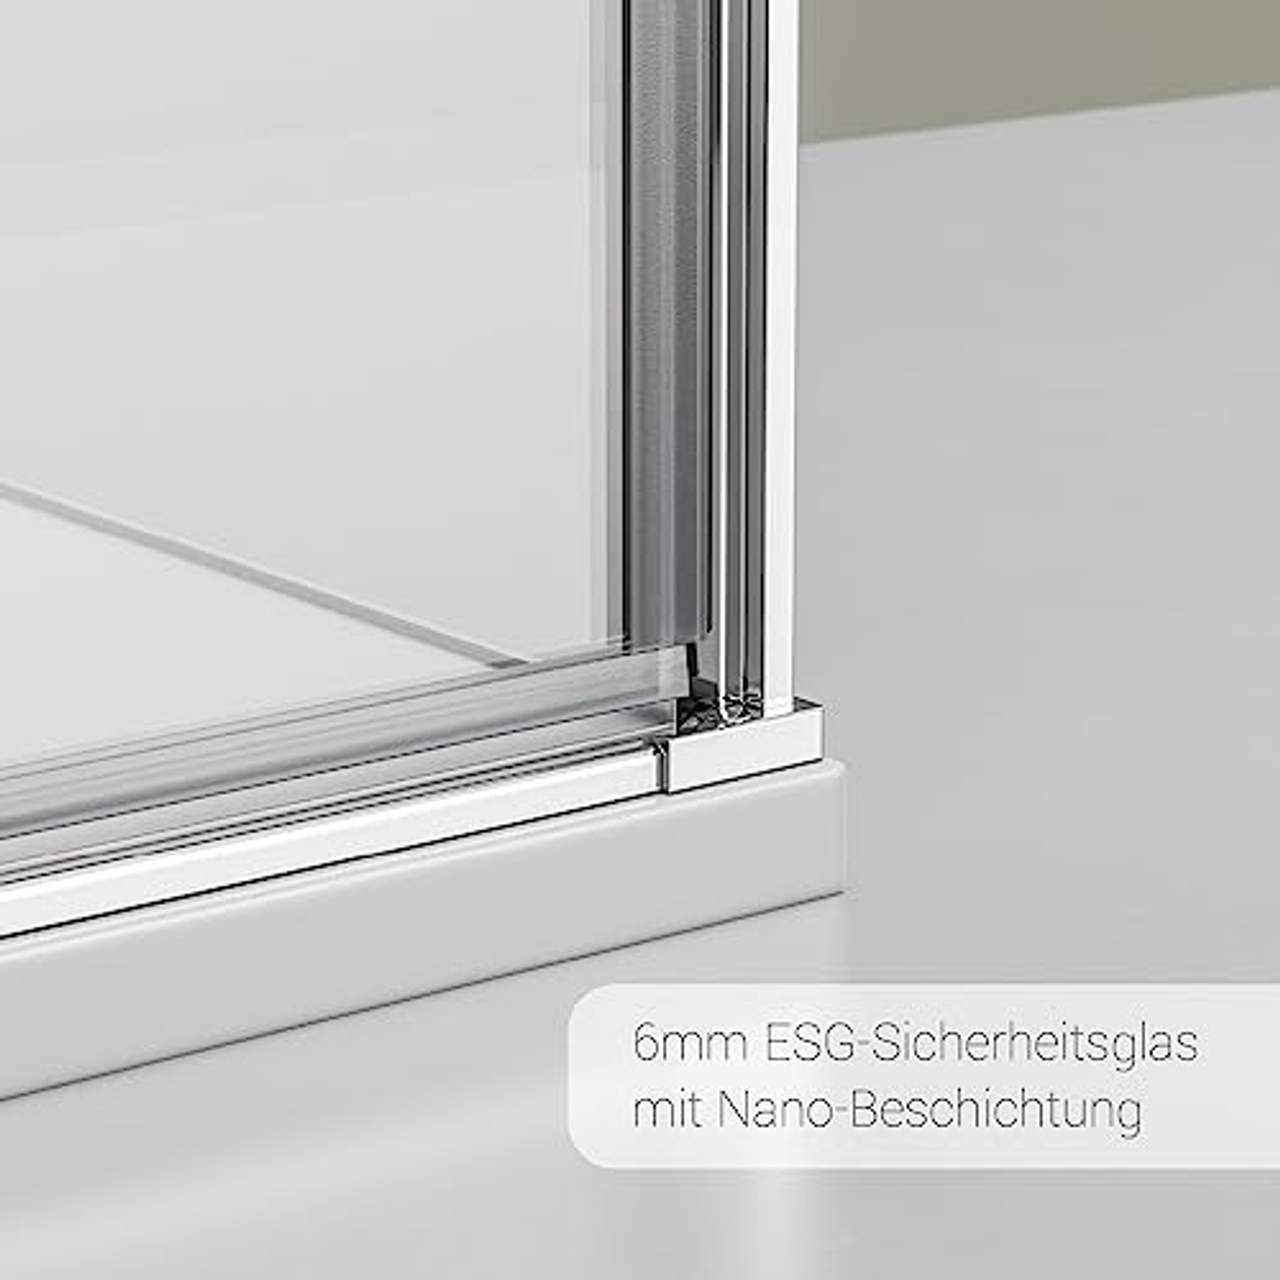 Bernstein Duschkabine Eckdusche Nano 6mm ESG-Glas Hebe-Senk-Mechanismus